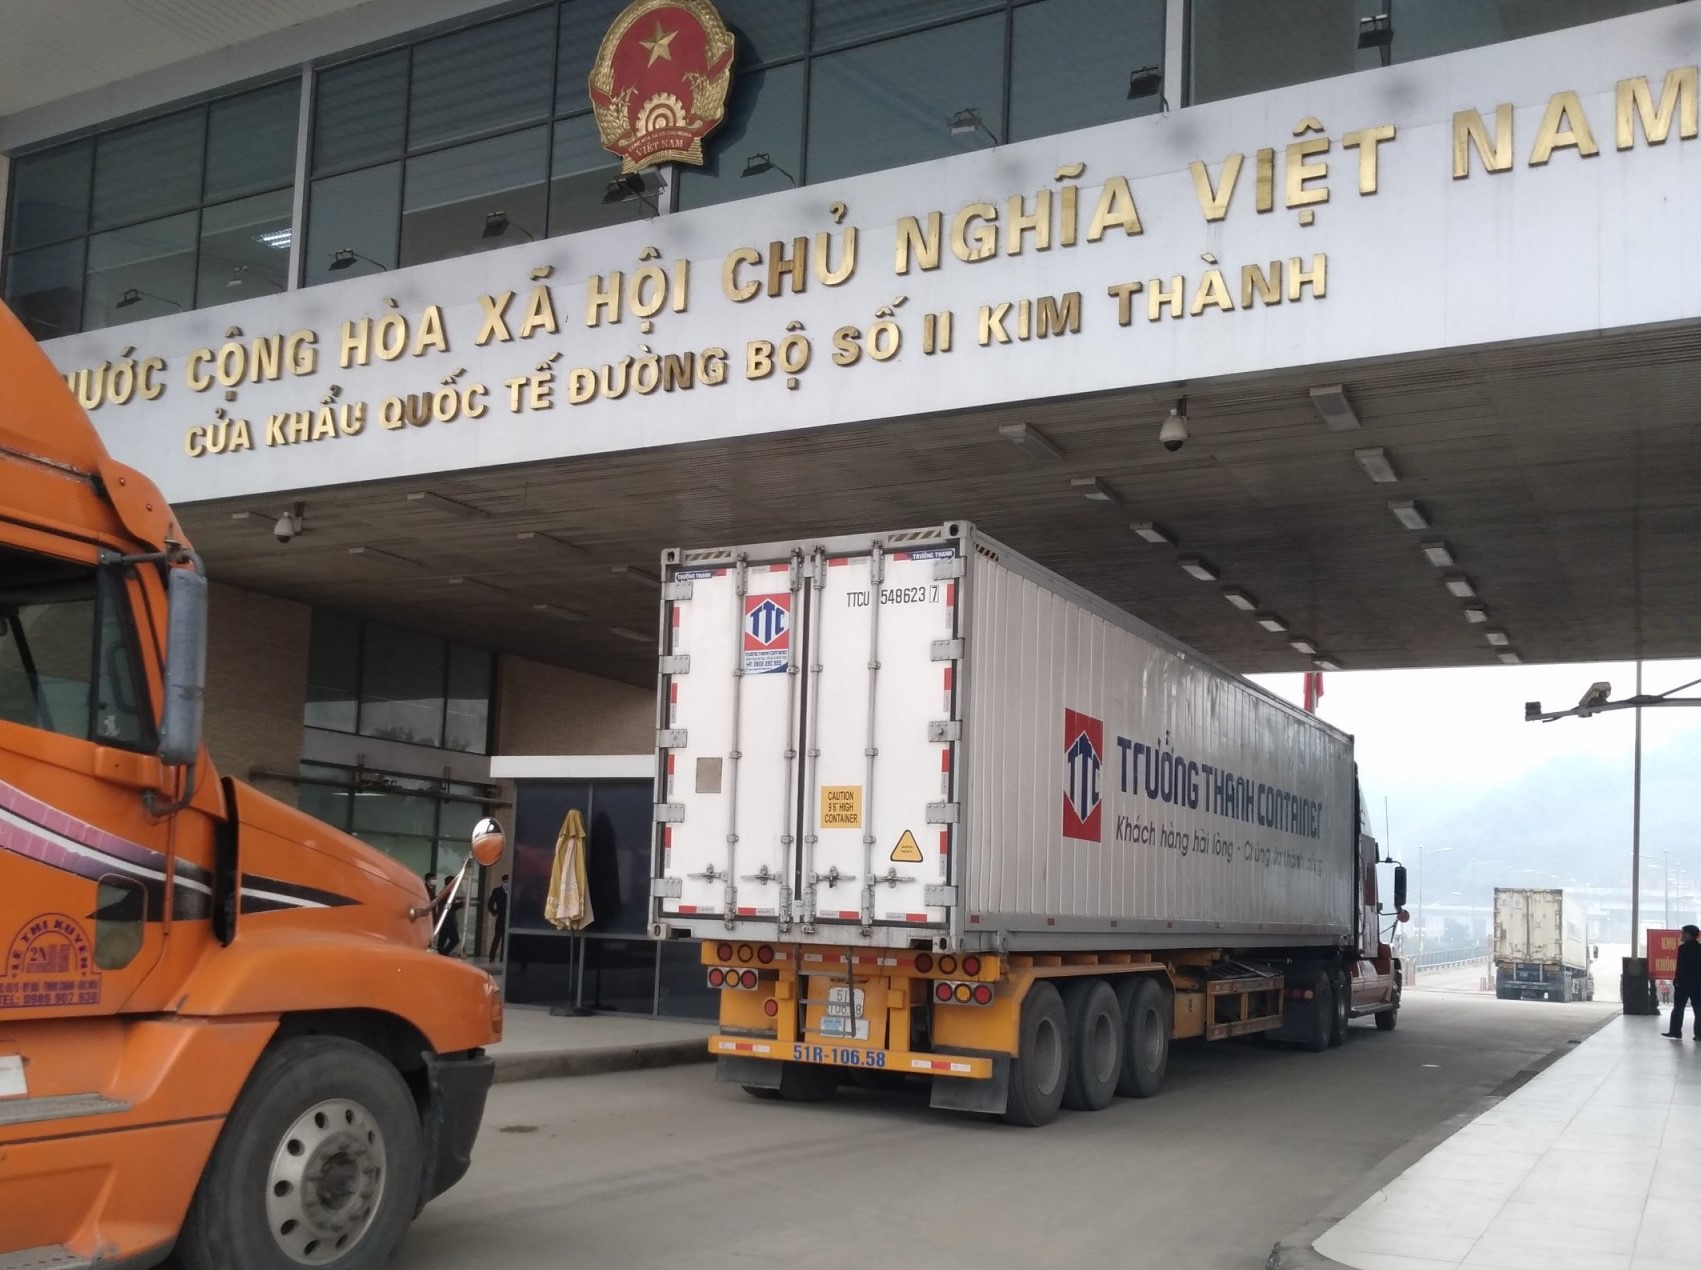 Xe chở hàng hóa làm thủ tục xuất khẩu sang Trung Quốc qua cửa khẩu quốc tế đường bộ số II Kim Thành, Lào Cai - Ảnh: C.TUỆ